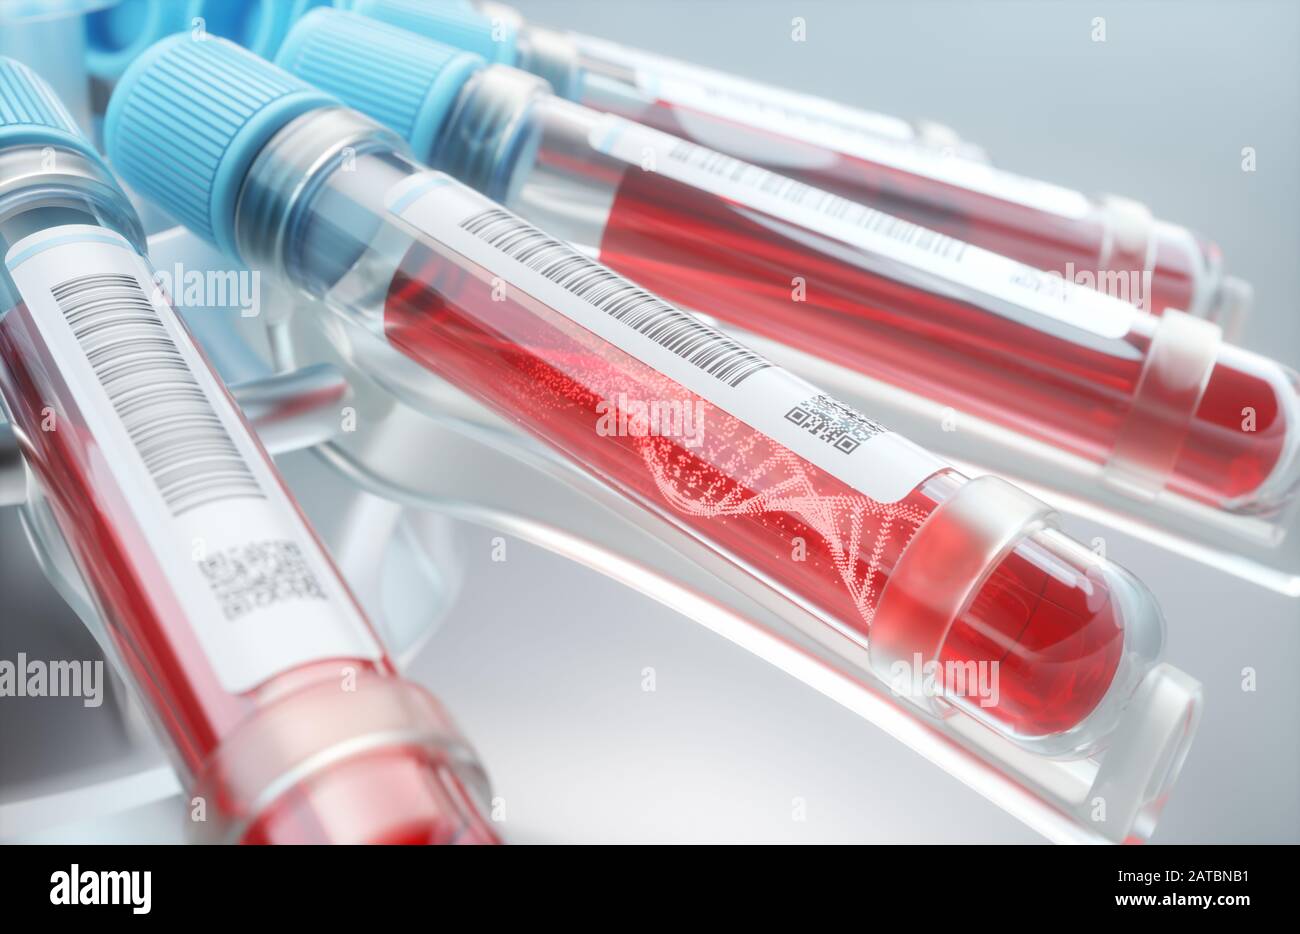 Cellules sanguines, molécule d'ADN formant à l'intérieur du tube à essai. Illustration tridimensionnelle, image conceptuelle de la science et de la technologie. Banque D'Images